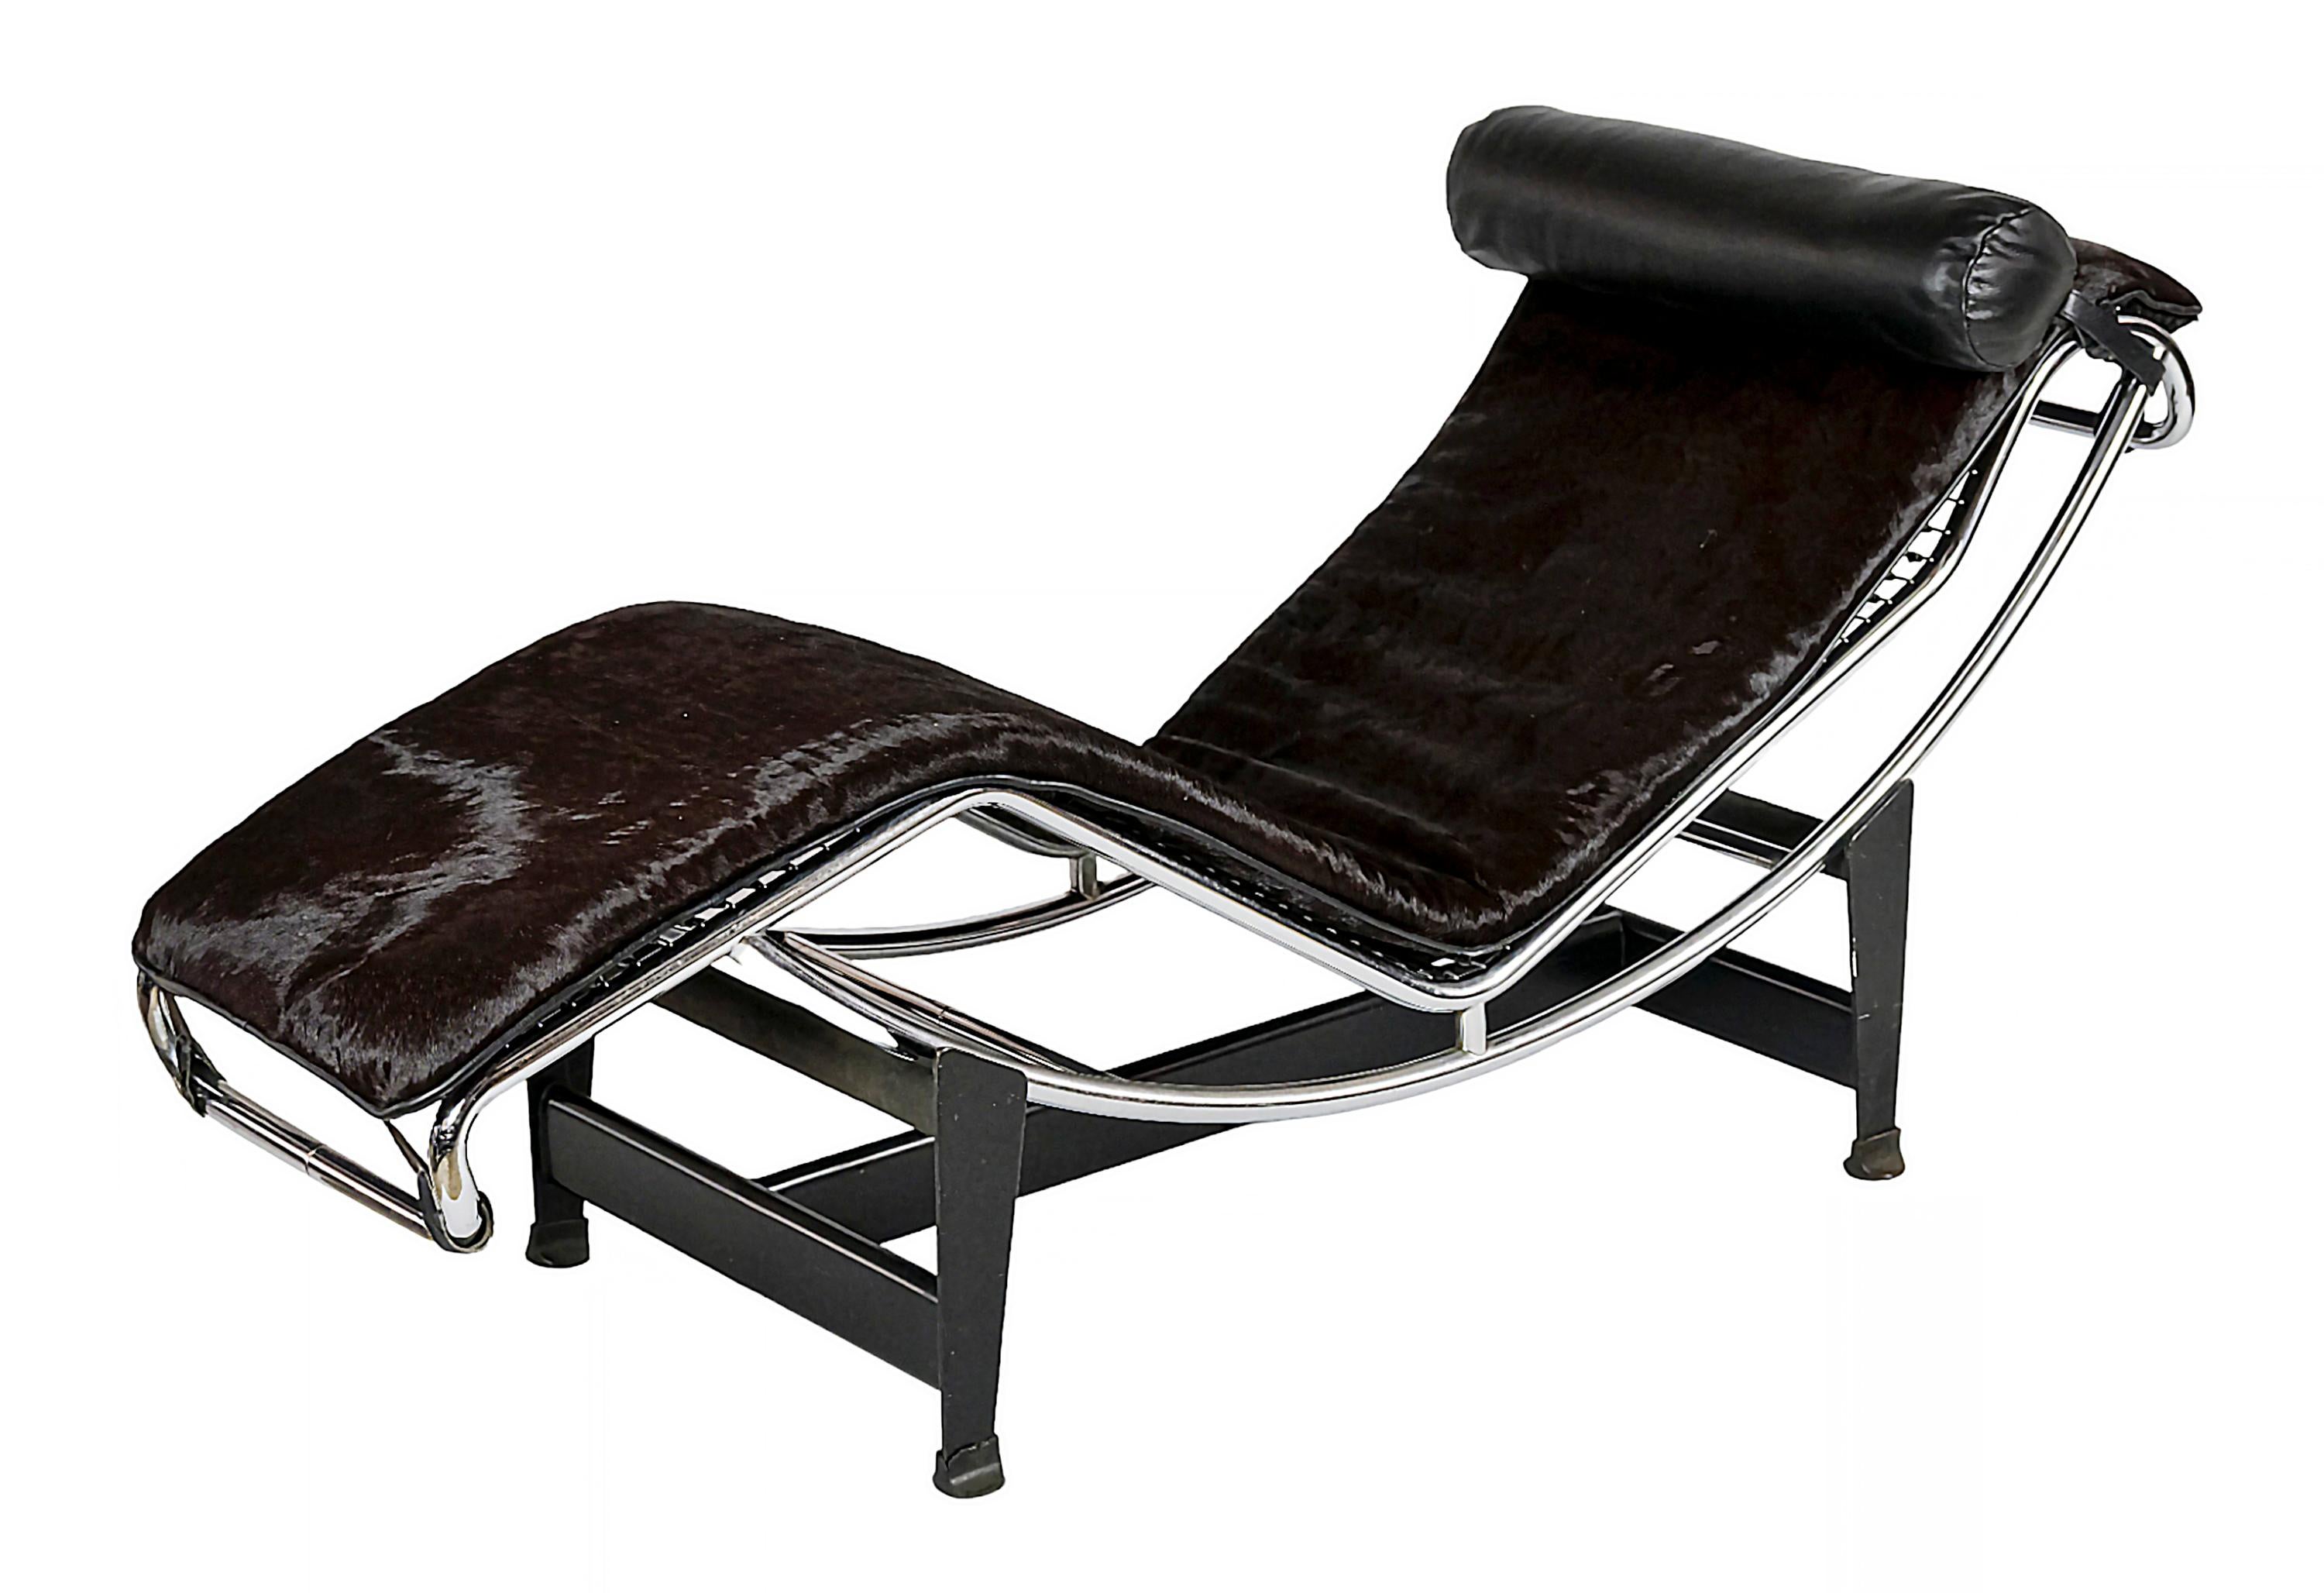 Chaise longue vintage Le Corbusier, Pierre Jeanneret, Charlotte Perriand  LC4 créé dans les années 1928.
Édition de fabrication vers les années 1960.
En fourrure naturelle de vache/poney marron foncé, coussin en cuir noir, structure en tube d'acier